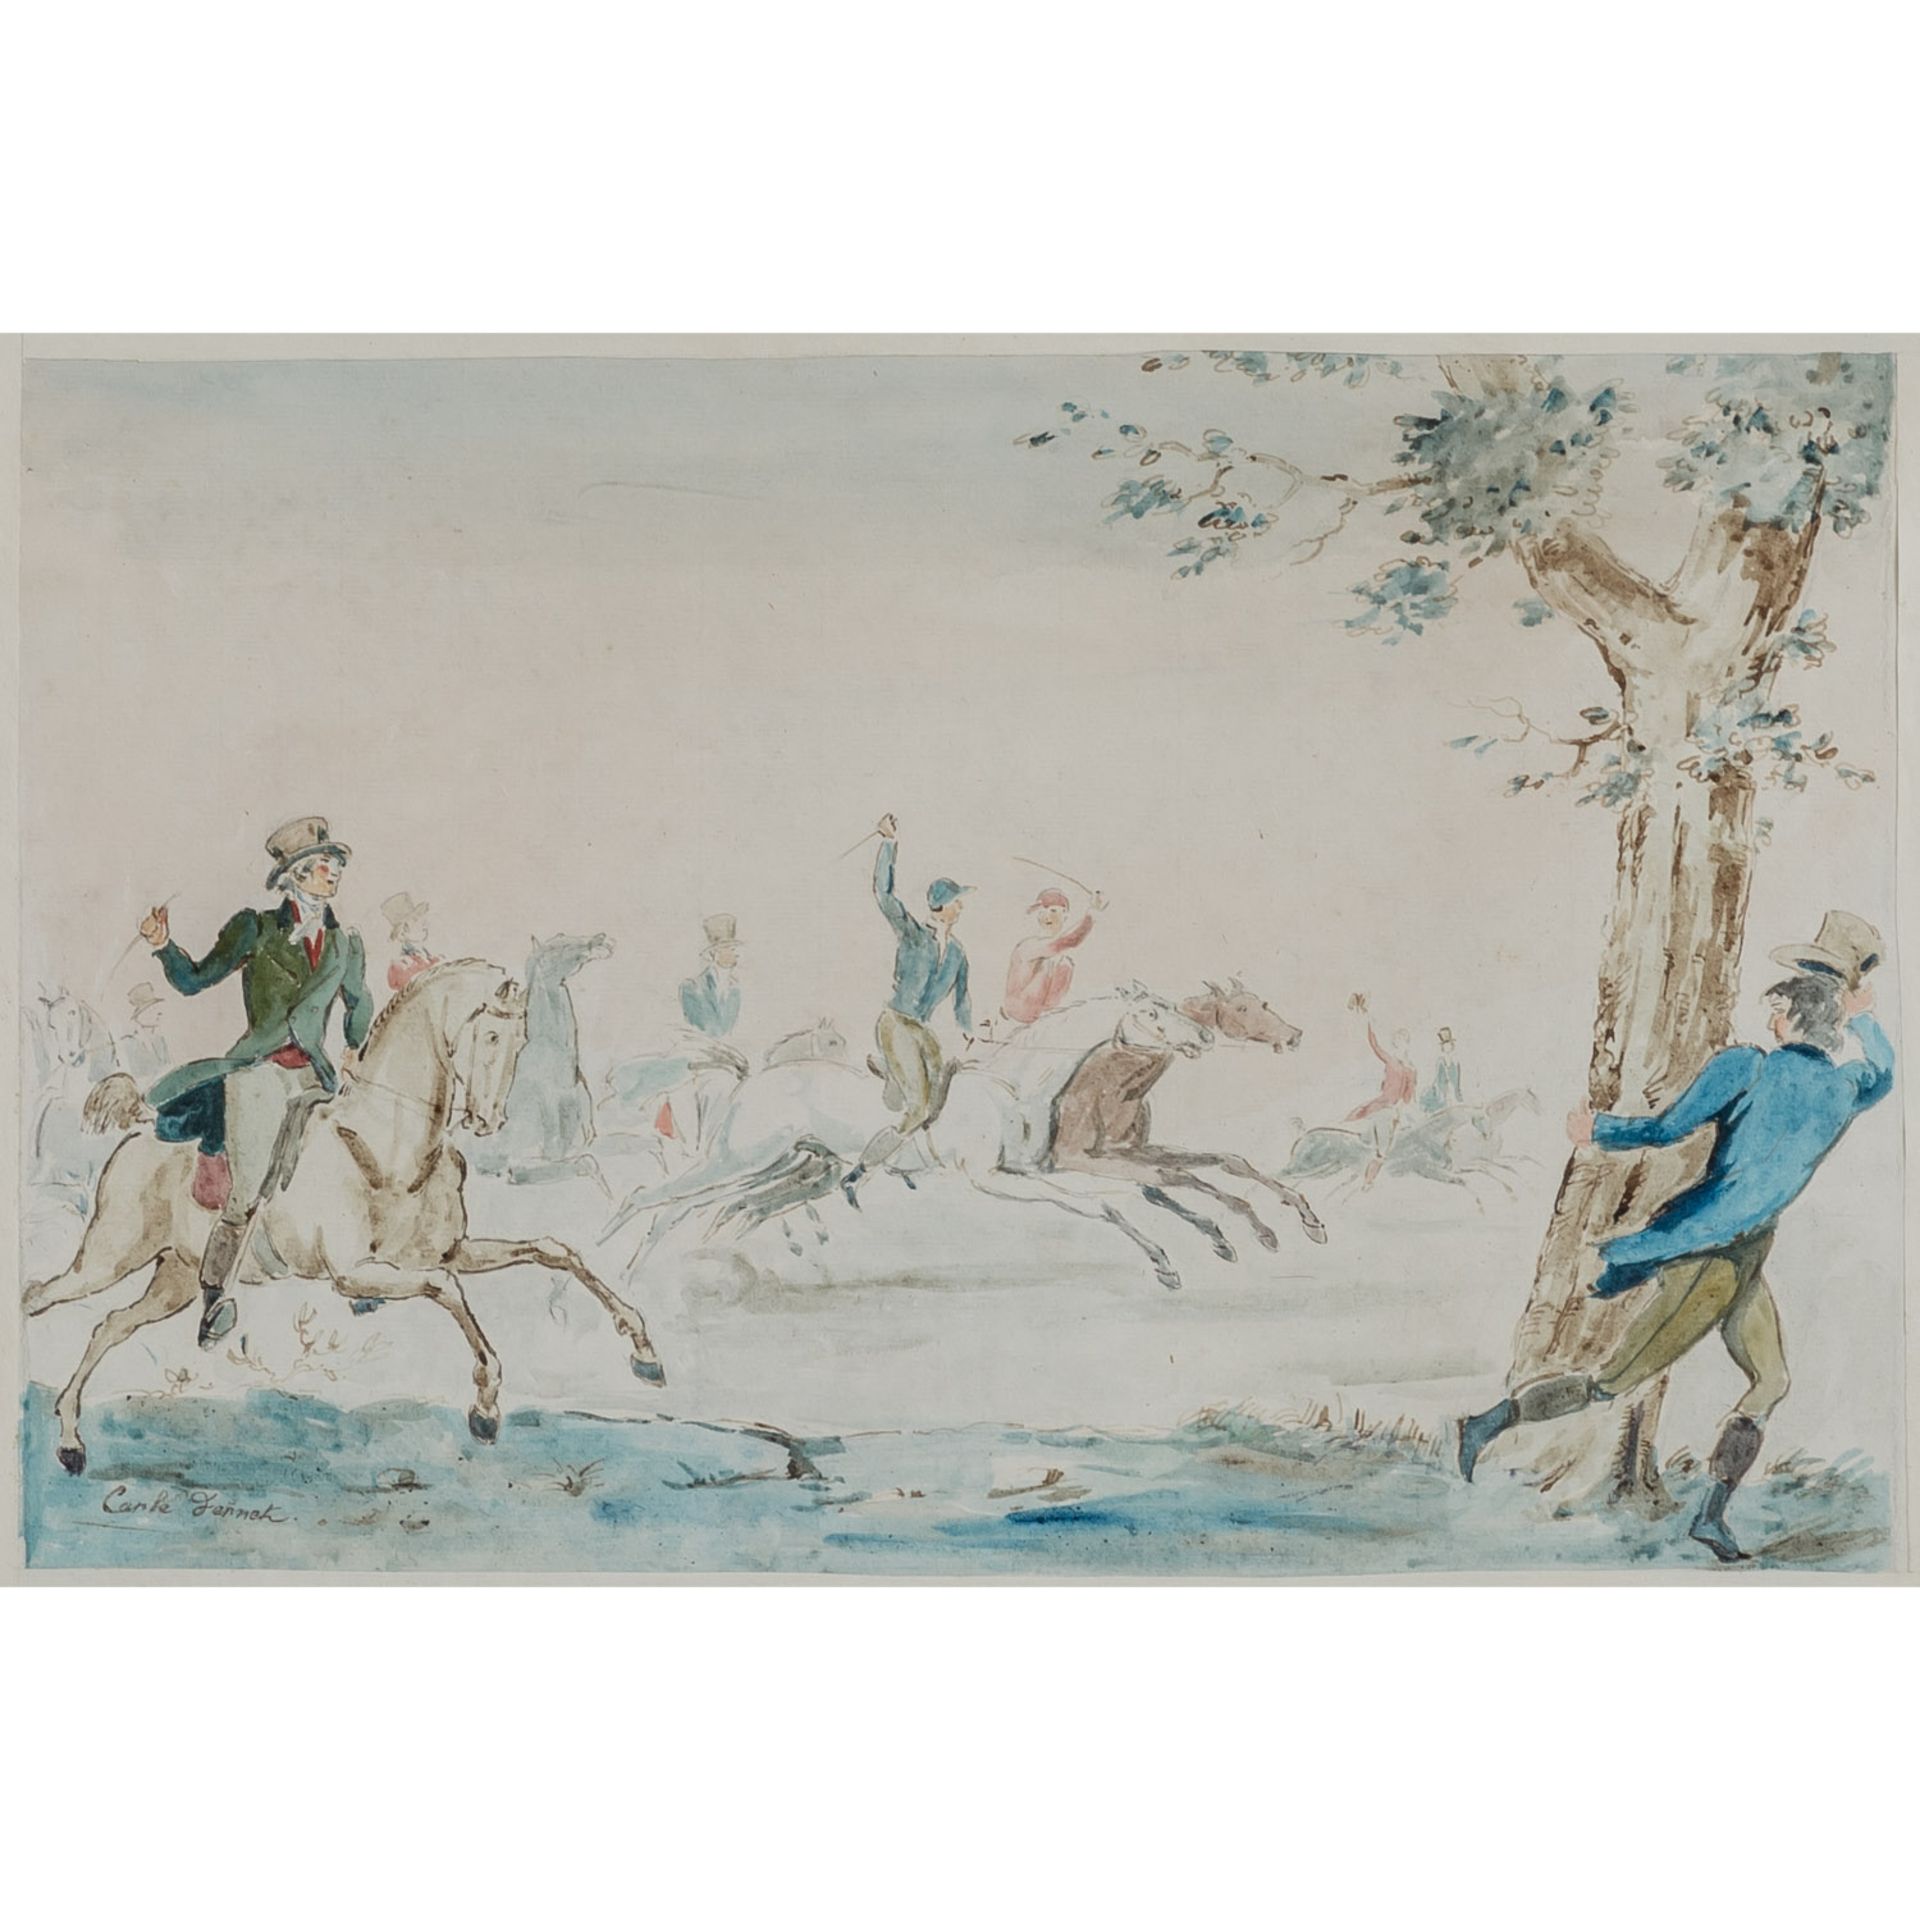 ENGLISCHER Künstler des 19. Jh., "Reiter bei der Jagd",u.li. undeutlich bezeichnet 'C